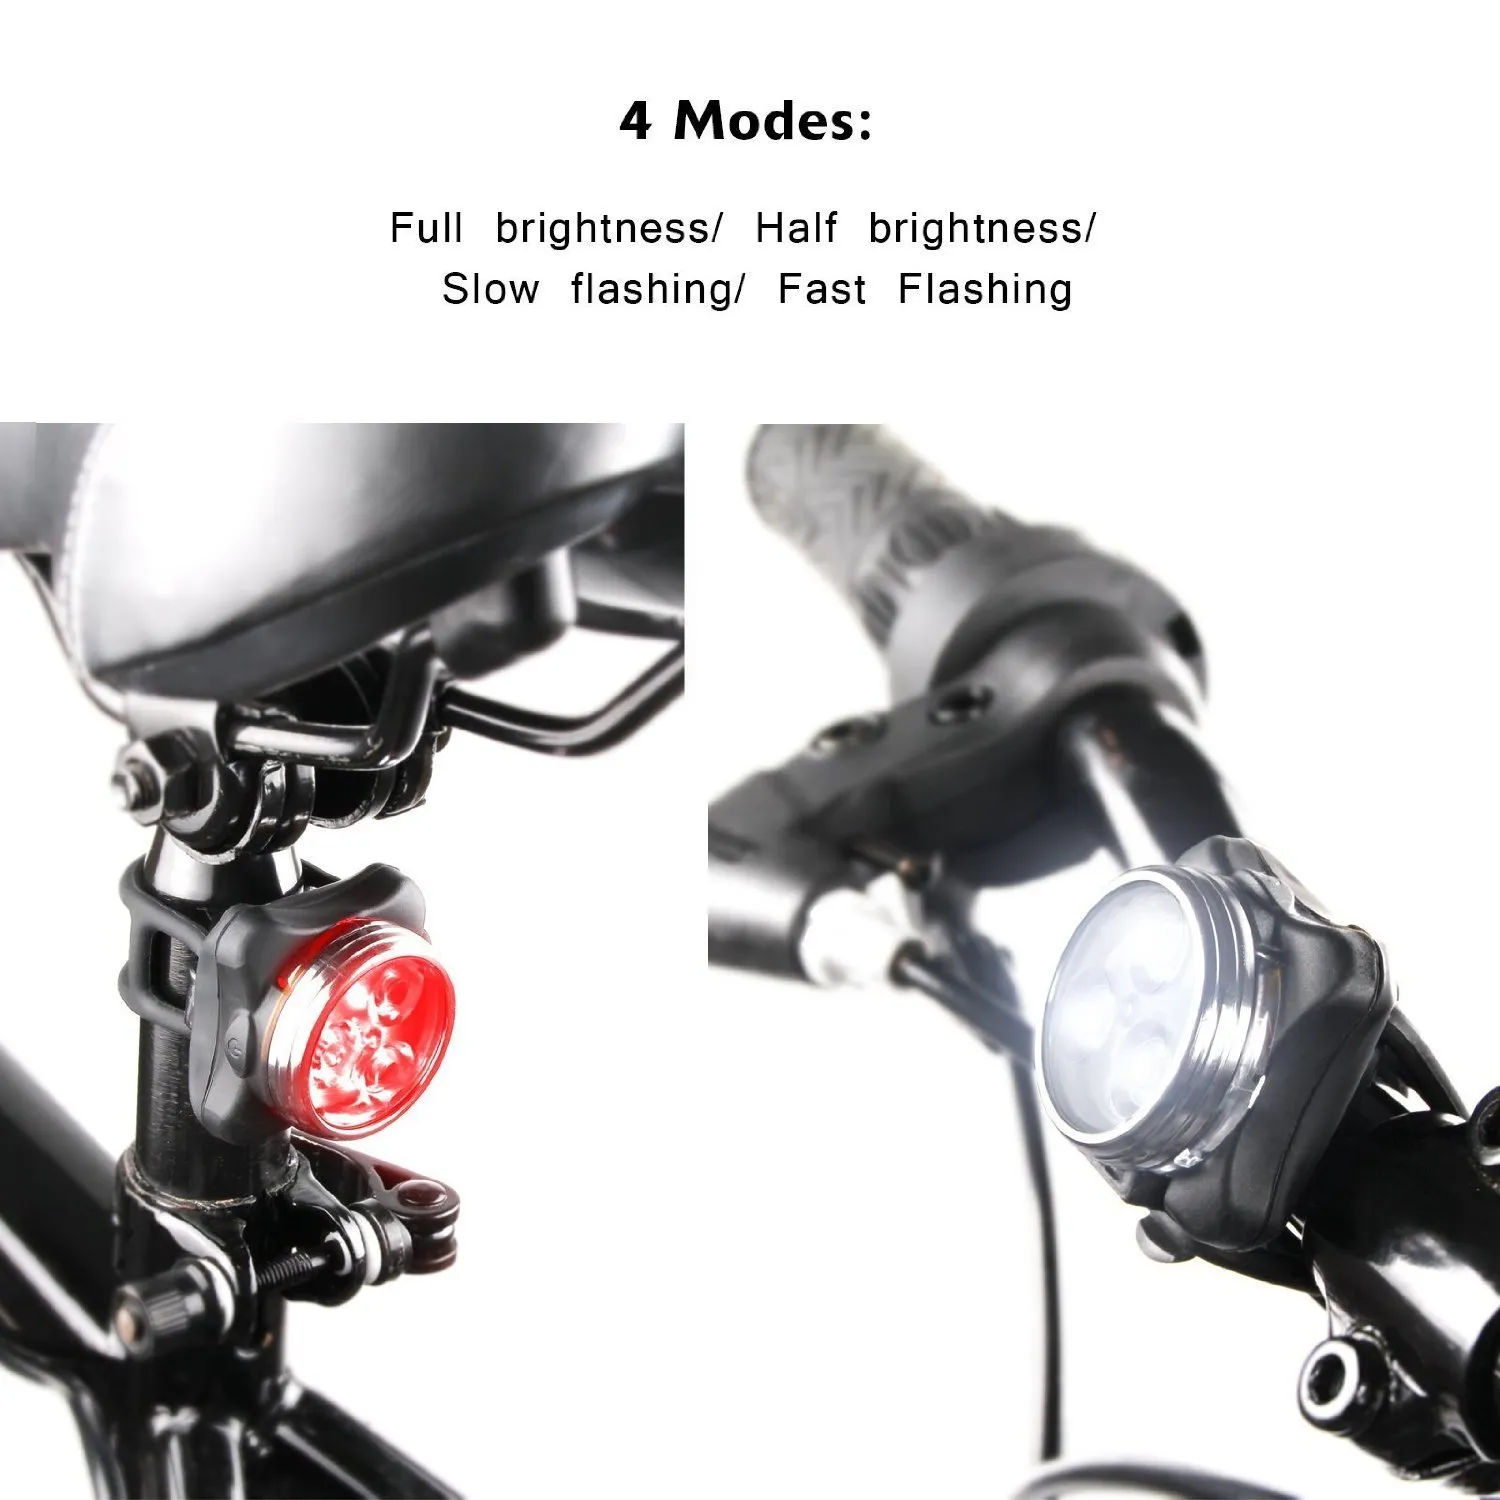 Beleuchtung wiederaufladbare Scheinwerfer-Rücklicht-Kombinationen, inklusive vorderem und hinterem Fahrradlichtset, Fahrradlichter, 2 USB-Kabel, 4 Modi, 350 lm, Wasser